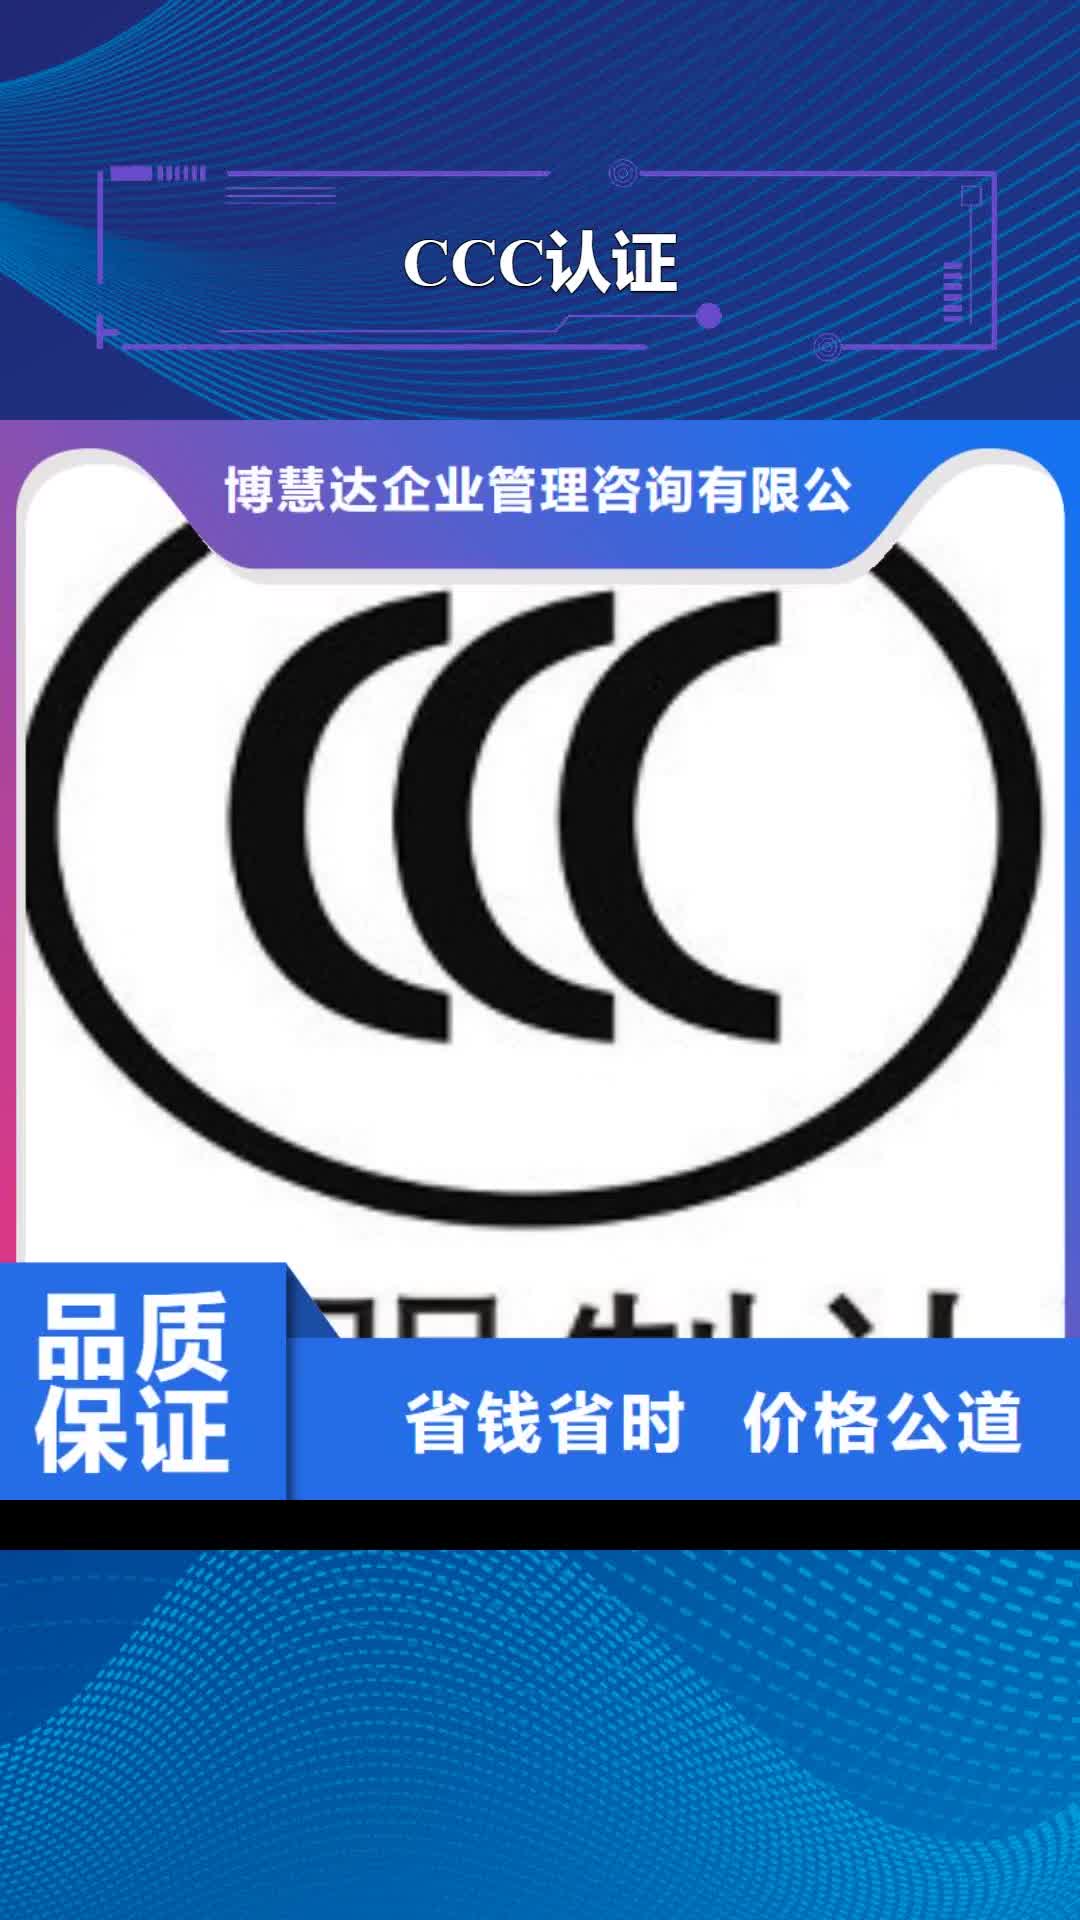 黄南【CCC认证】-ISO10012认证快速响应